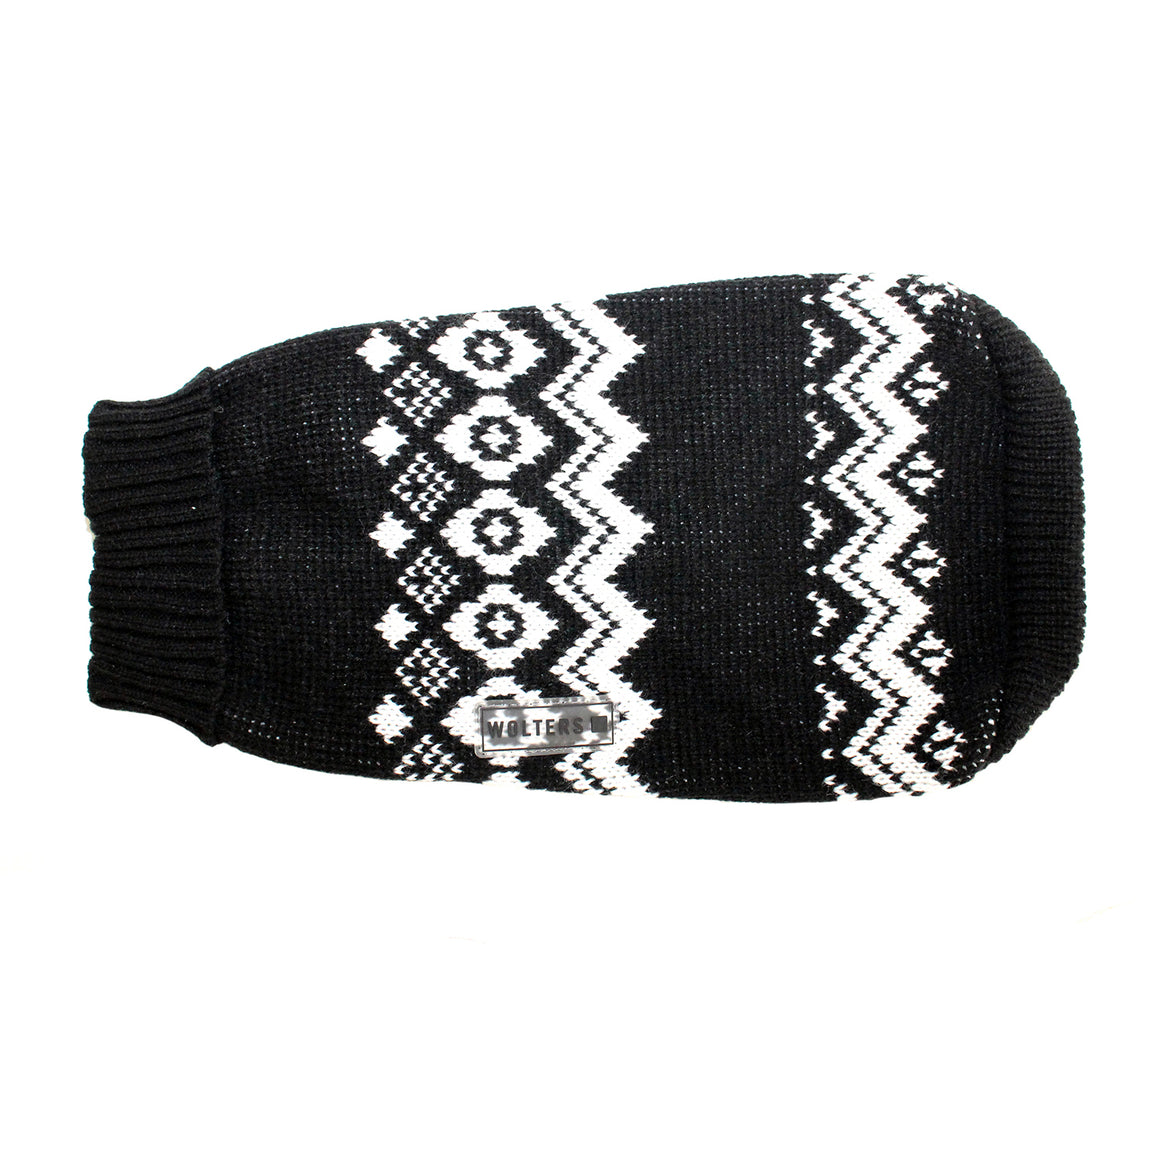 Norweger Hundepullover für Mops, Bully & Co., schwarz-weiß